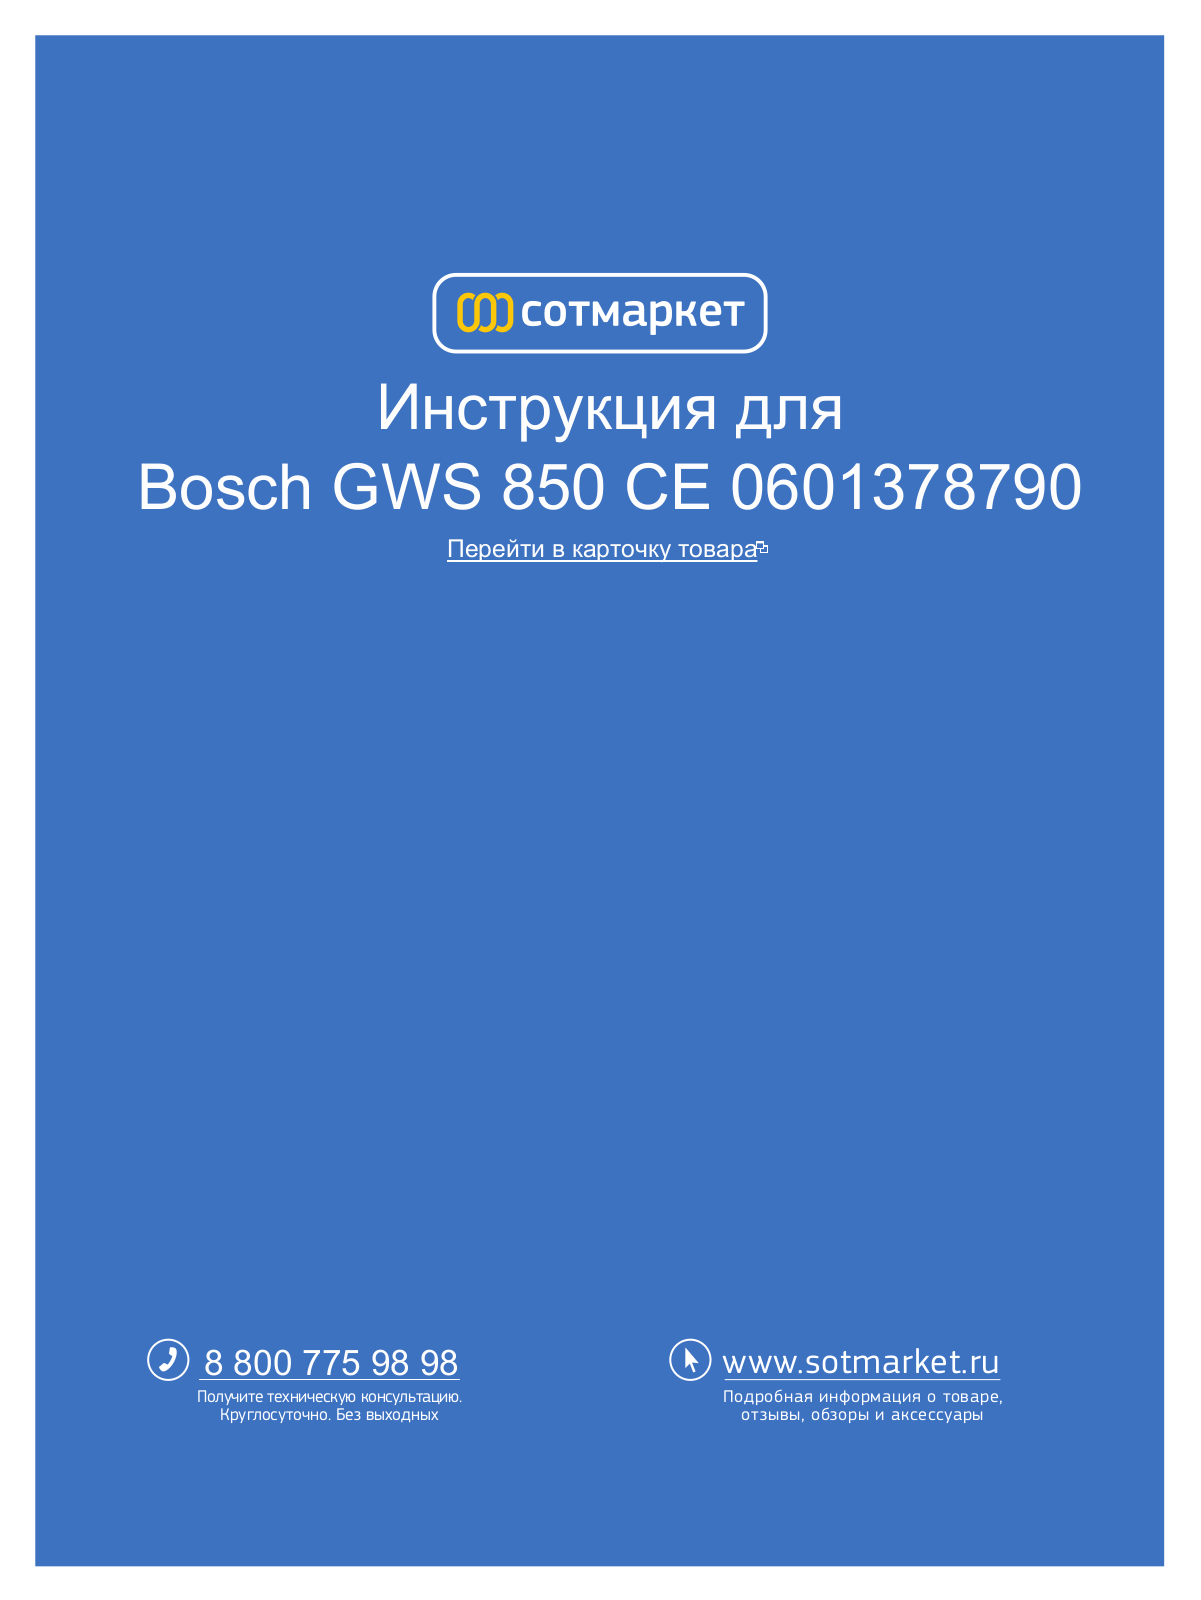 Bosch GWS 850 CE User Manual